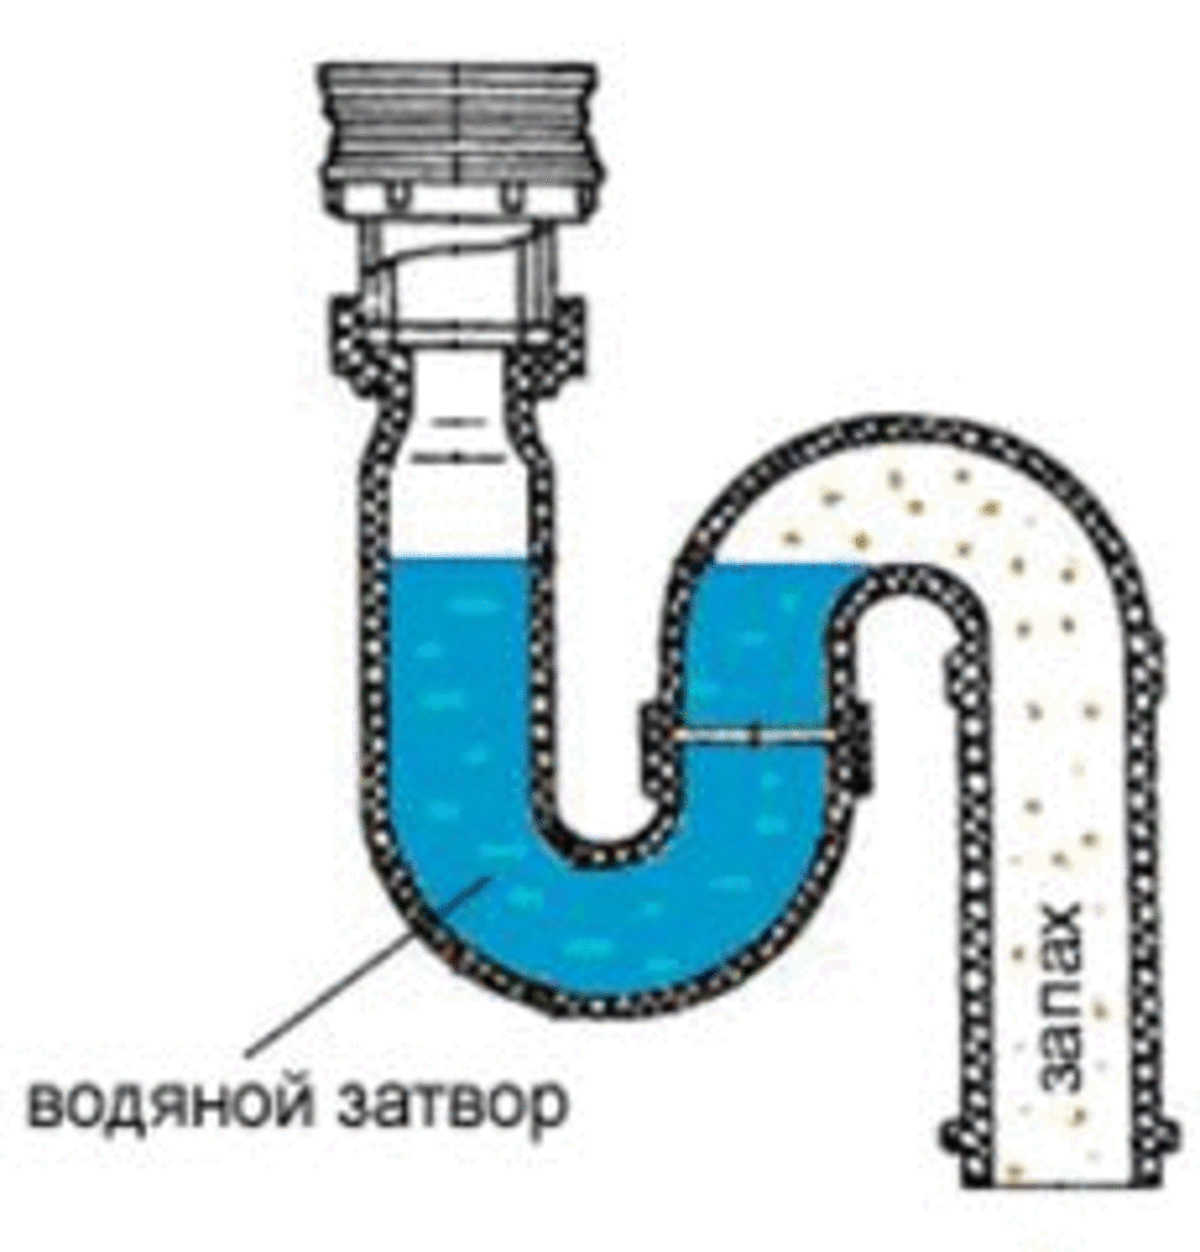 Срыв гидрозатвора и причины появления запаха из канализации